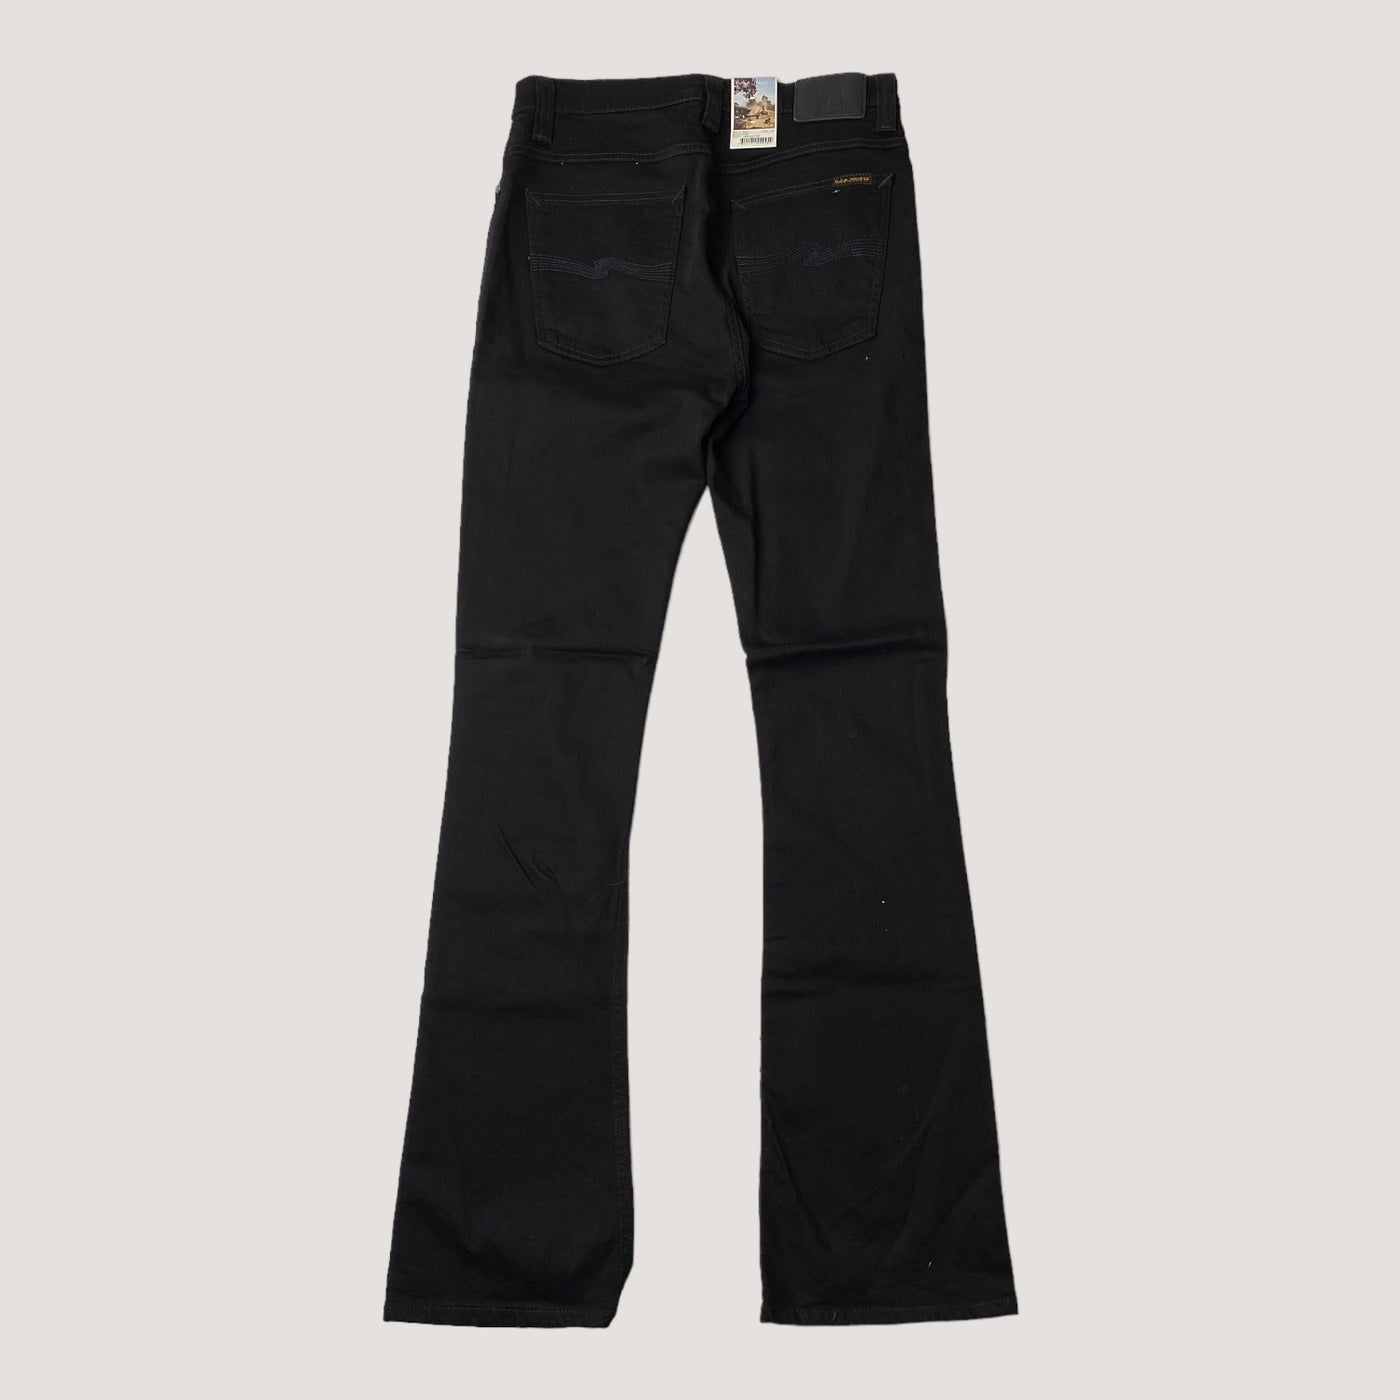 Nudie Jeans bootcut jeans, black | women 32/34